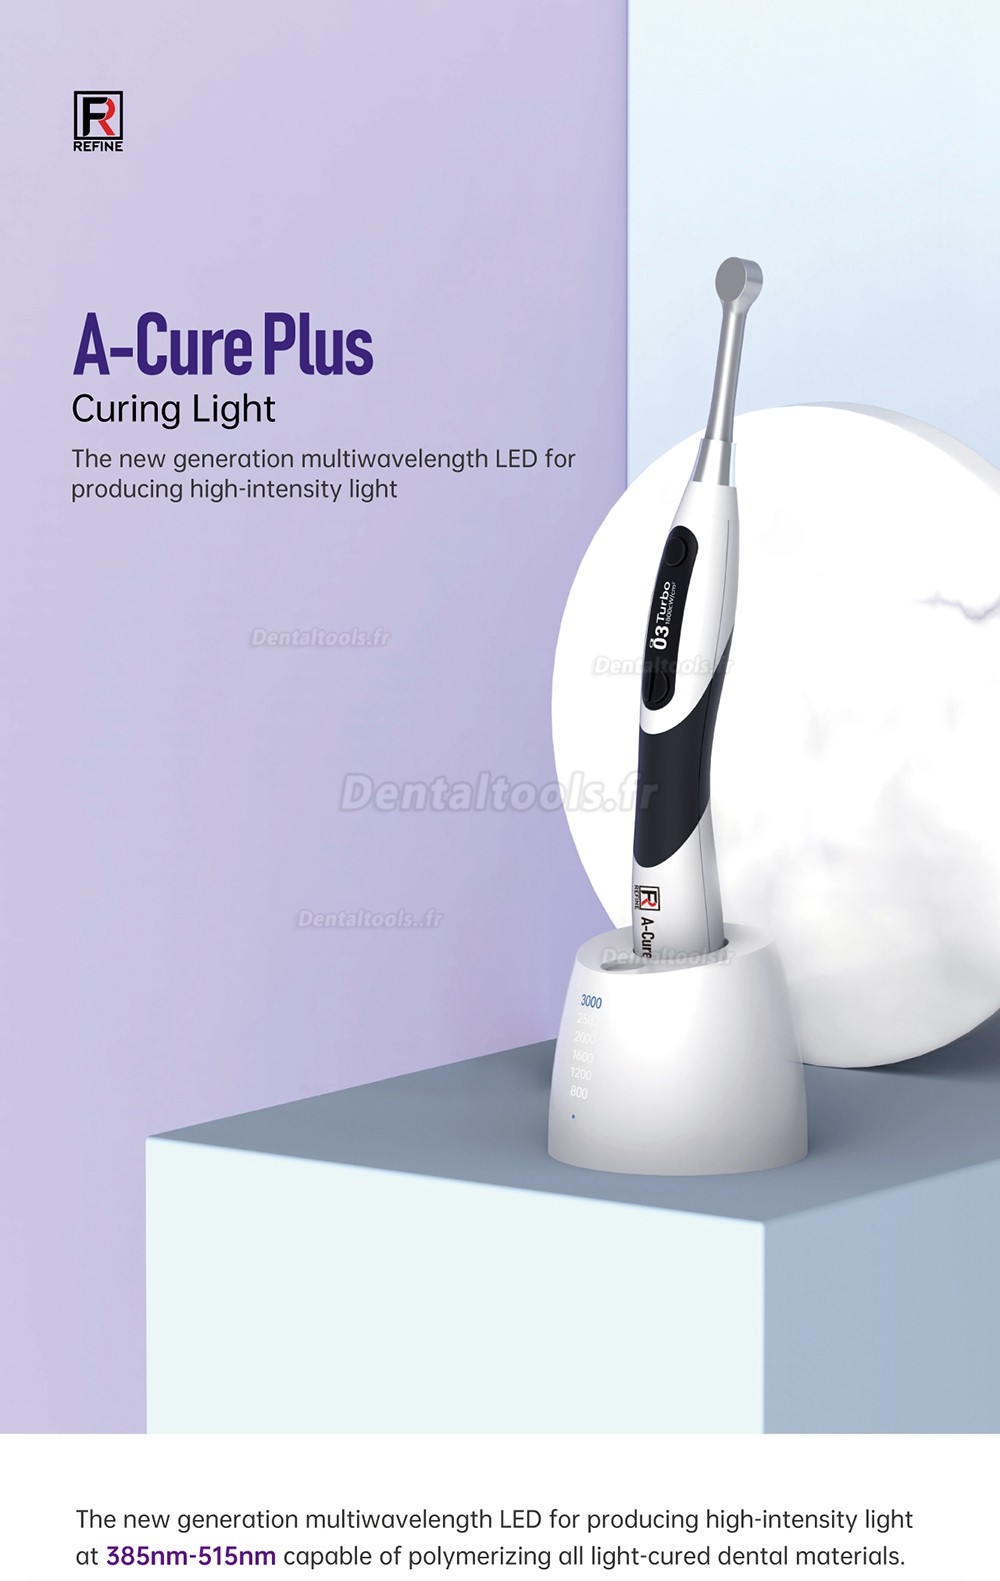 Refine A-Cure Plus Lampe à polymériser à LED dentaire sans fil avec luxmètre et détection des caries